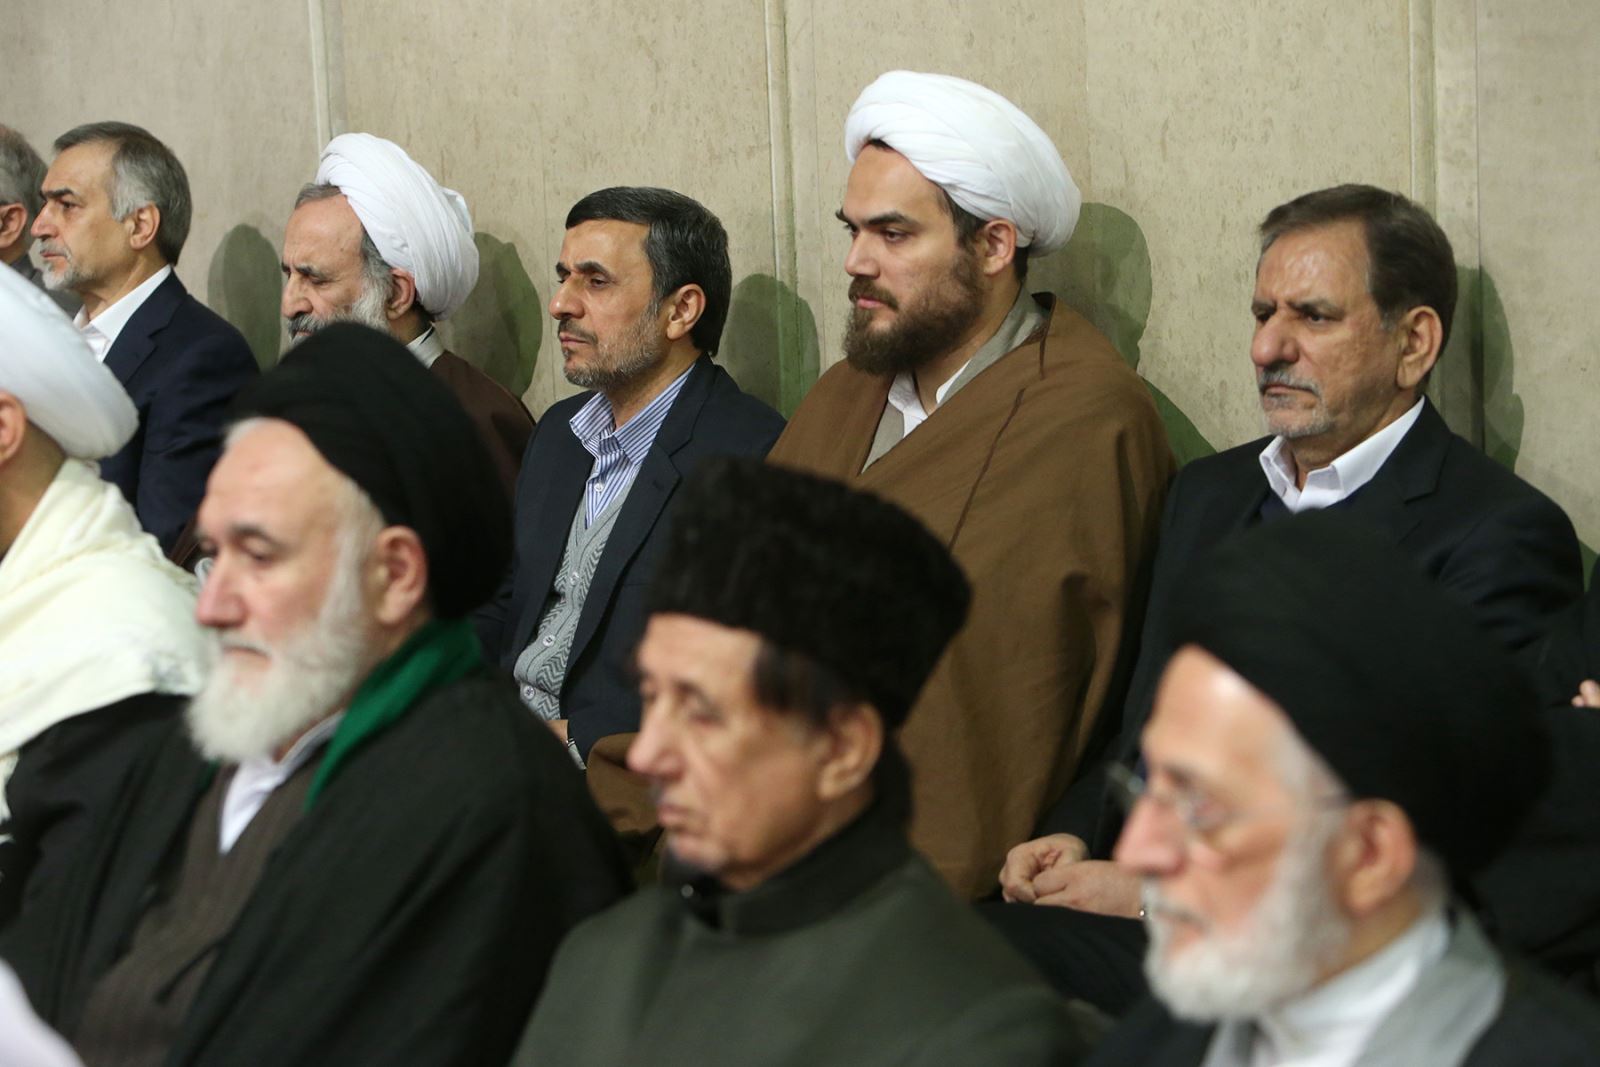 یکی از افرادی که در دیدار مهمانان اجلاس وحدت با رهبری حضور داشت احمدی نژاد بود